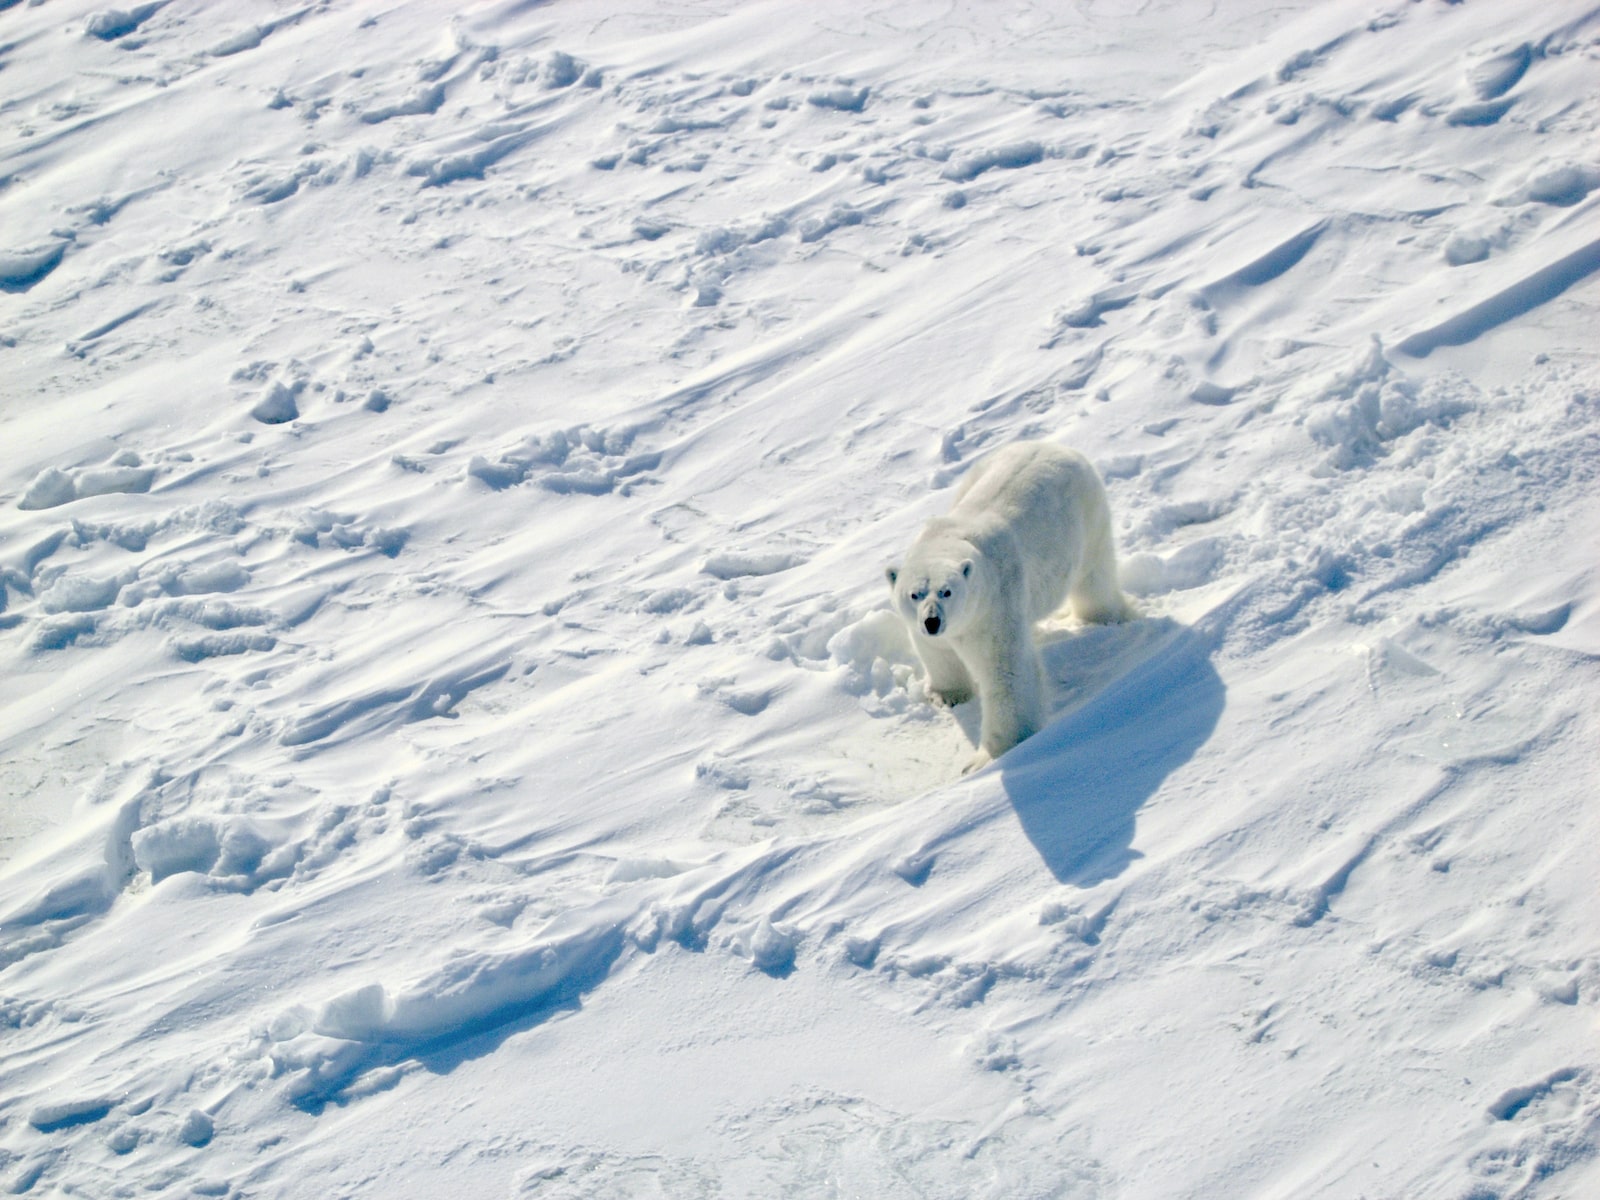 a polar bear walks along snowy ground